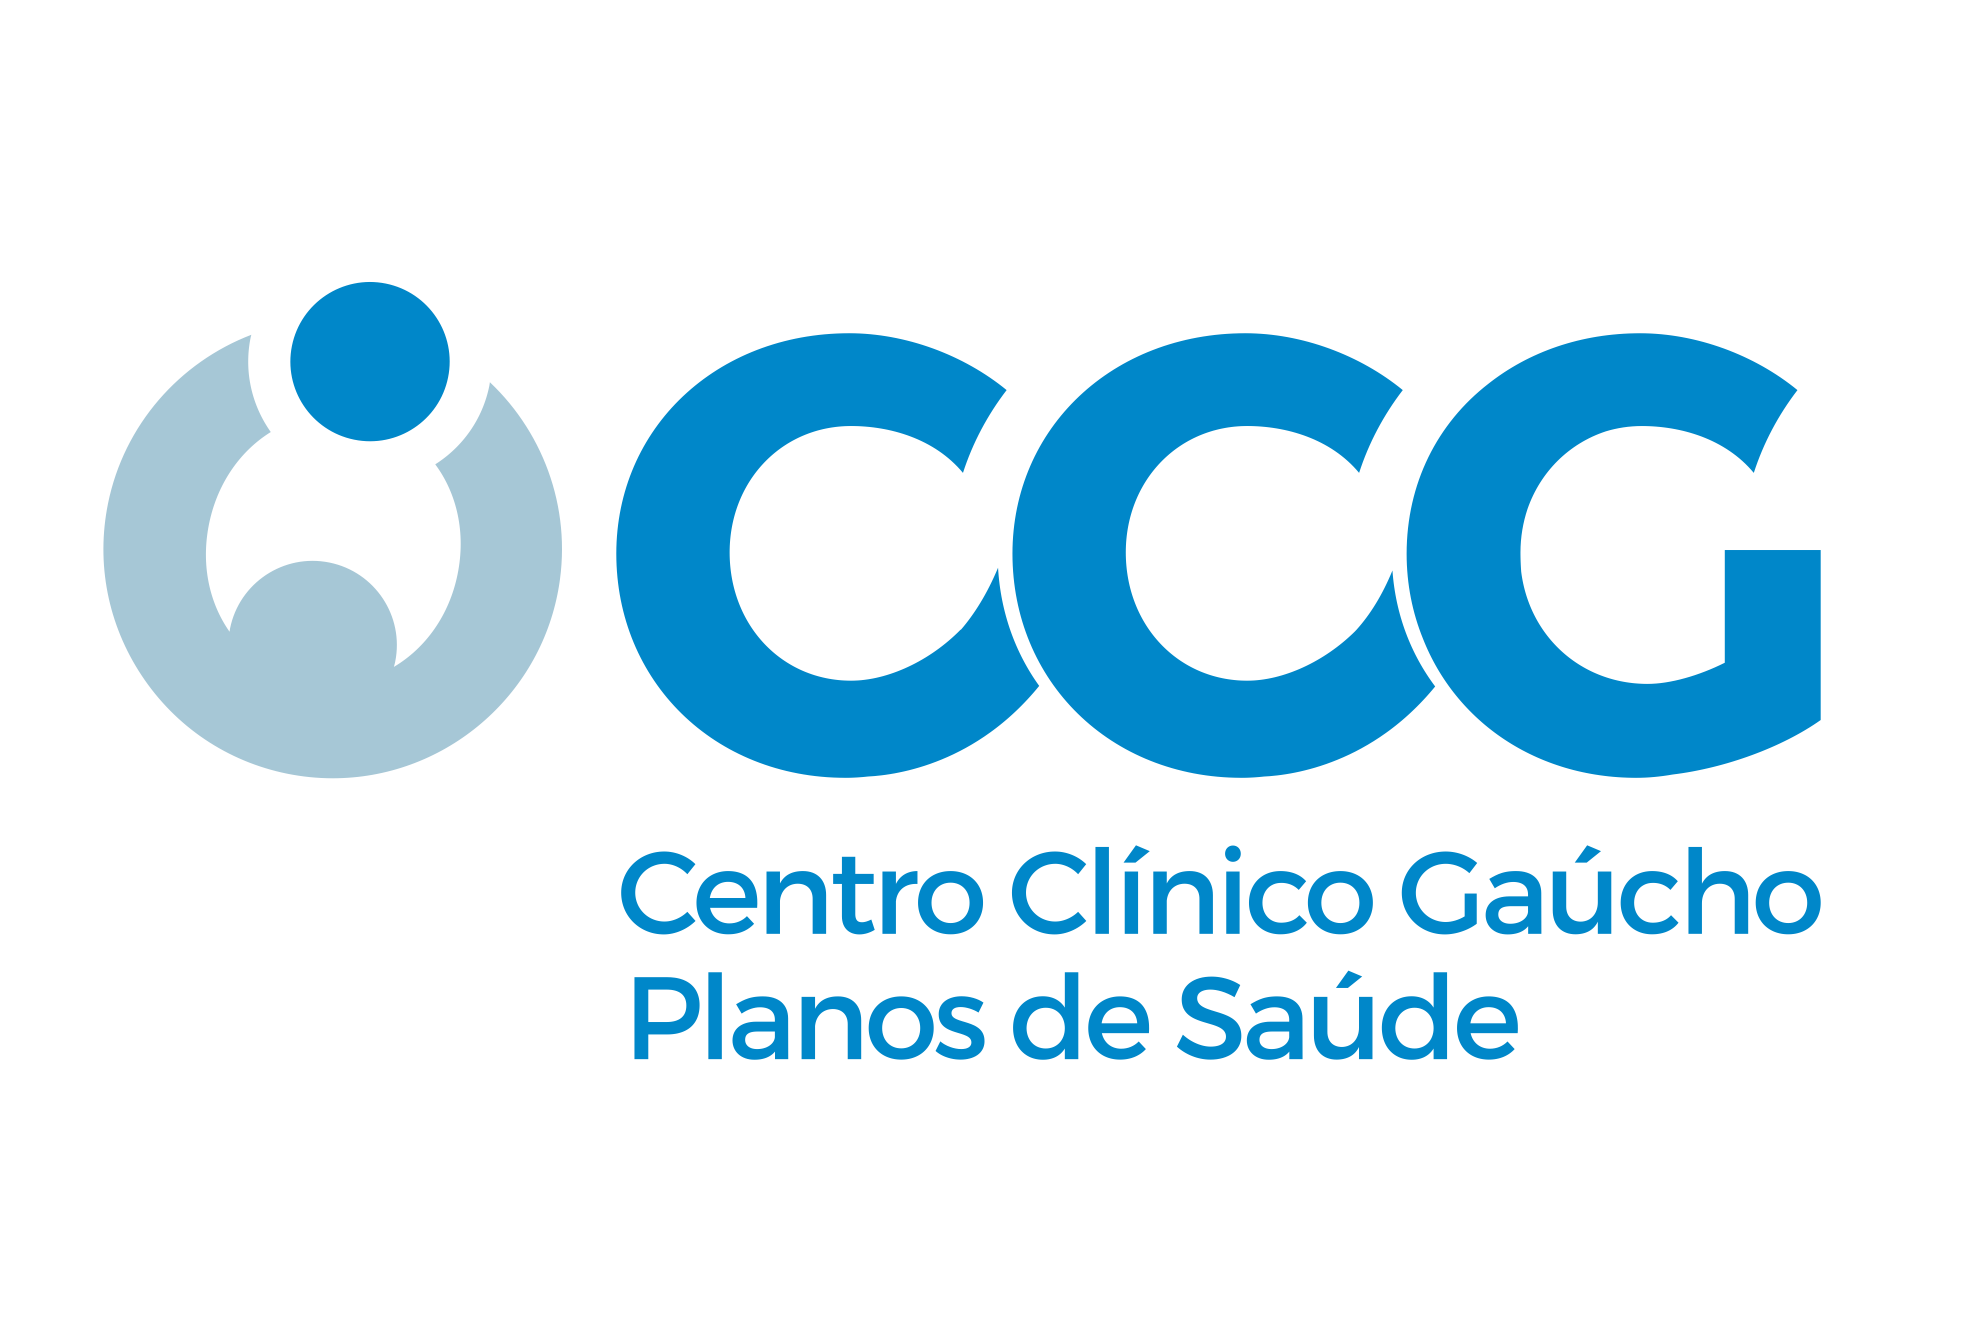 CENTRO CLINICO GAUCHO - Clínicas Médicas - Porto Alegre, RS